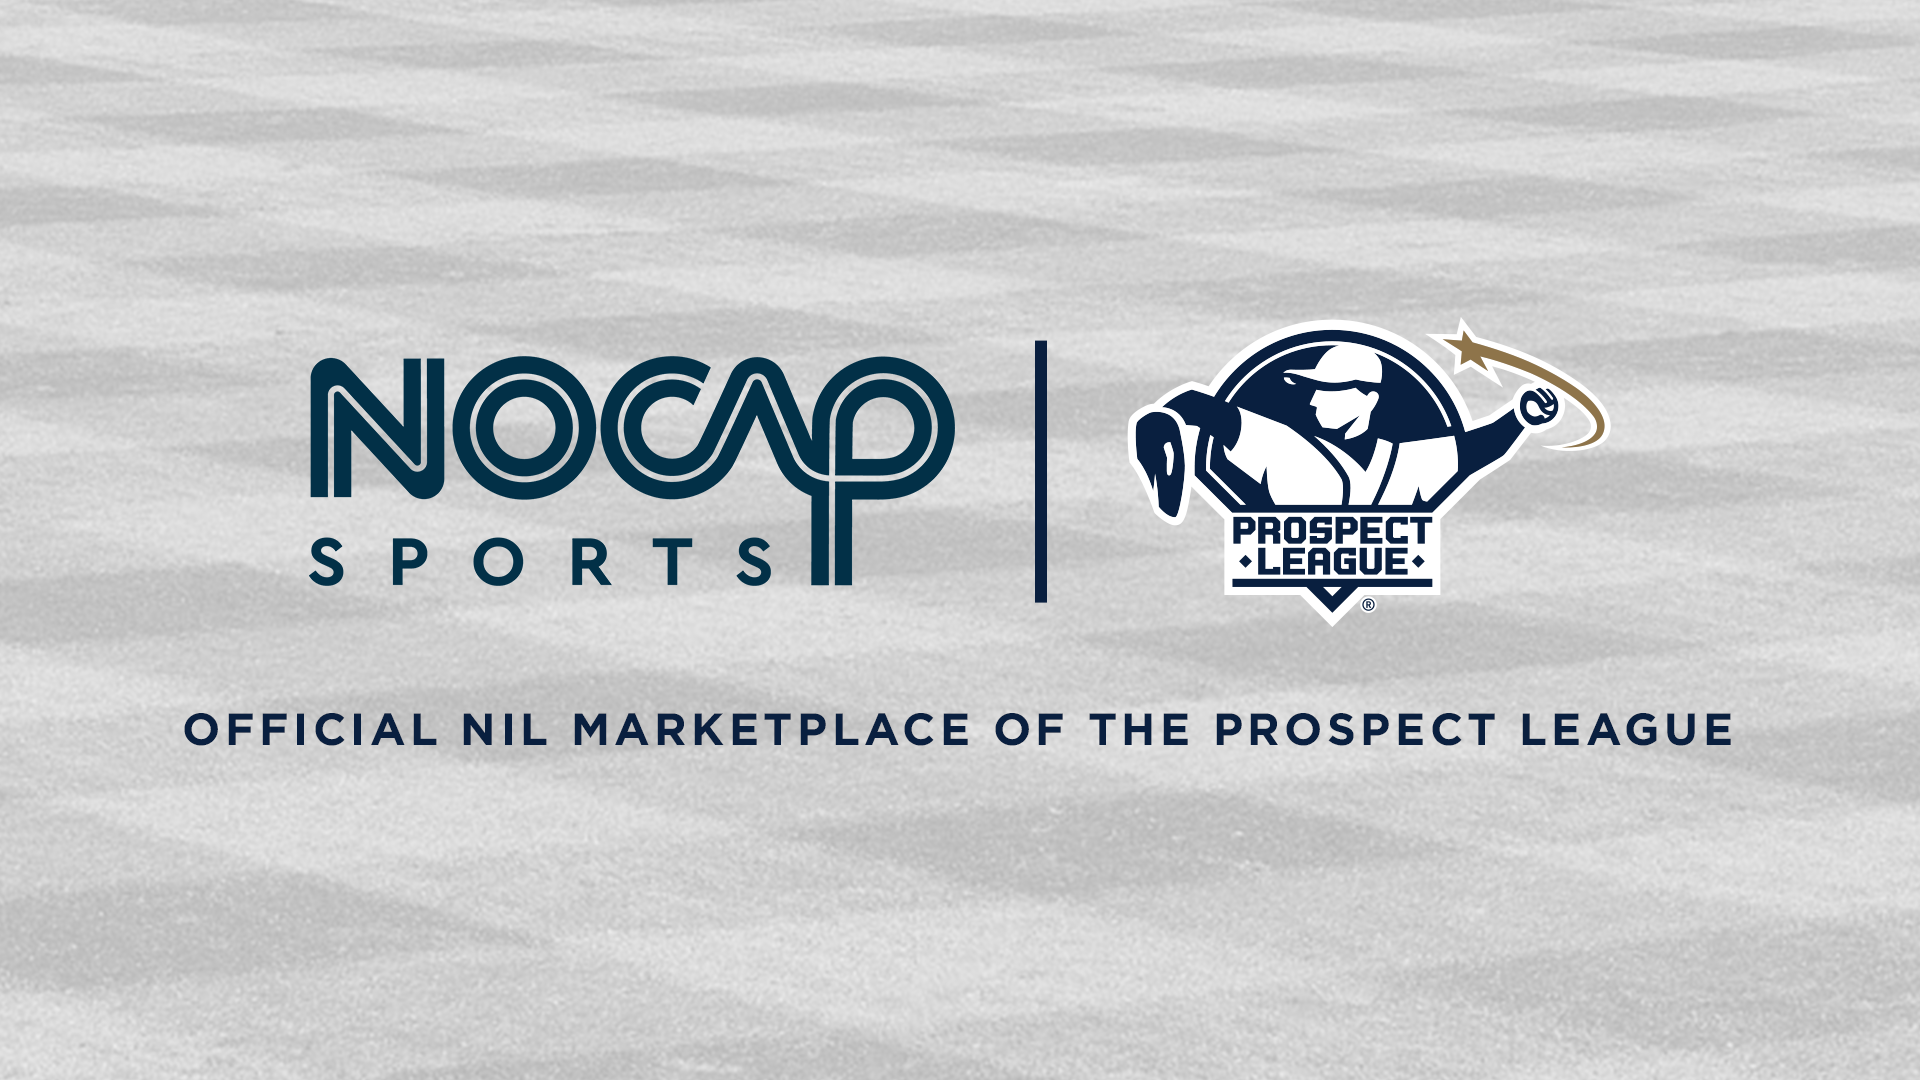 Prospect League Announces Partnership with NOCAP Sports